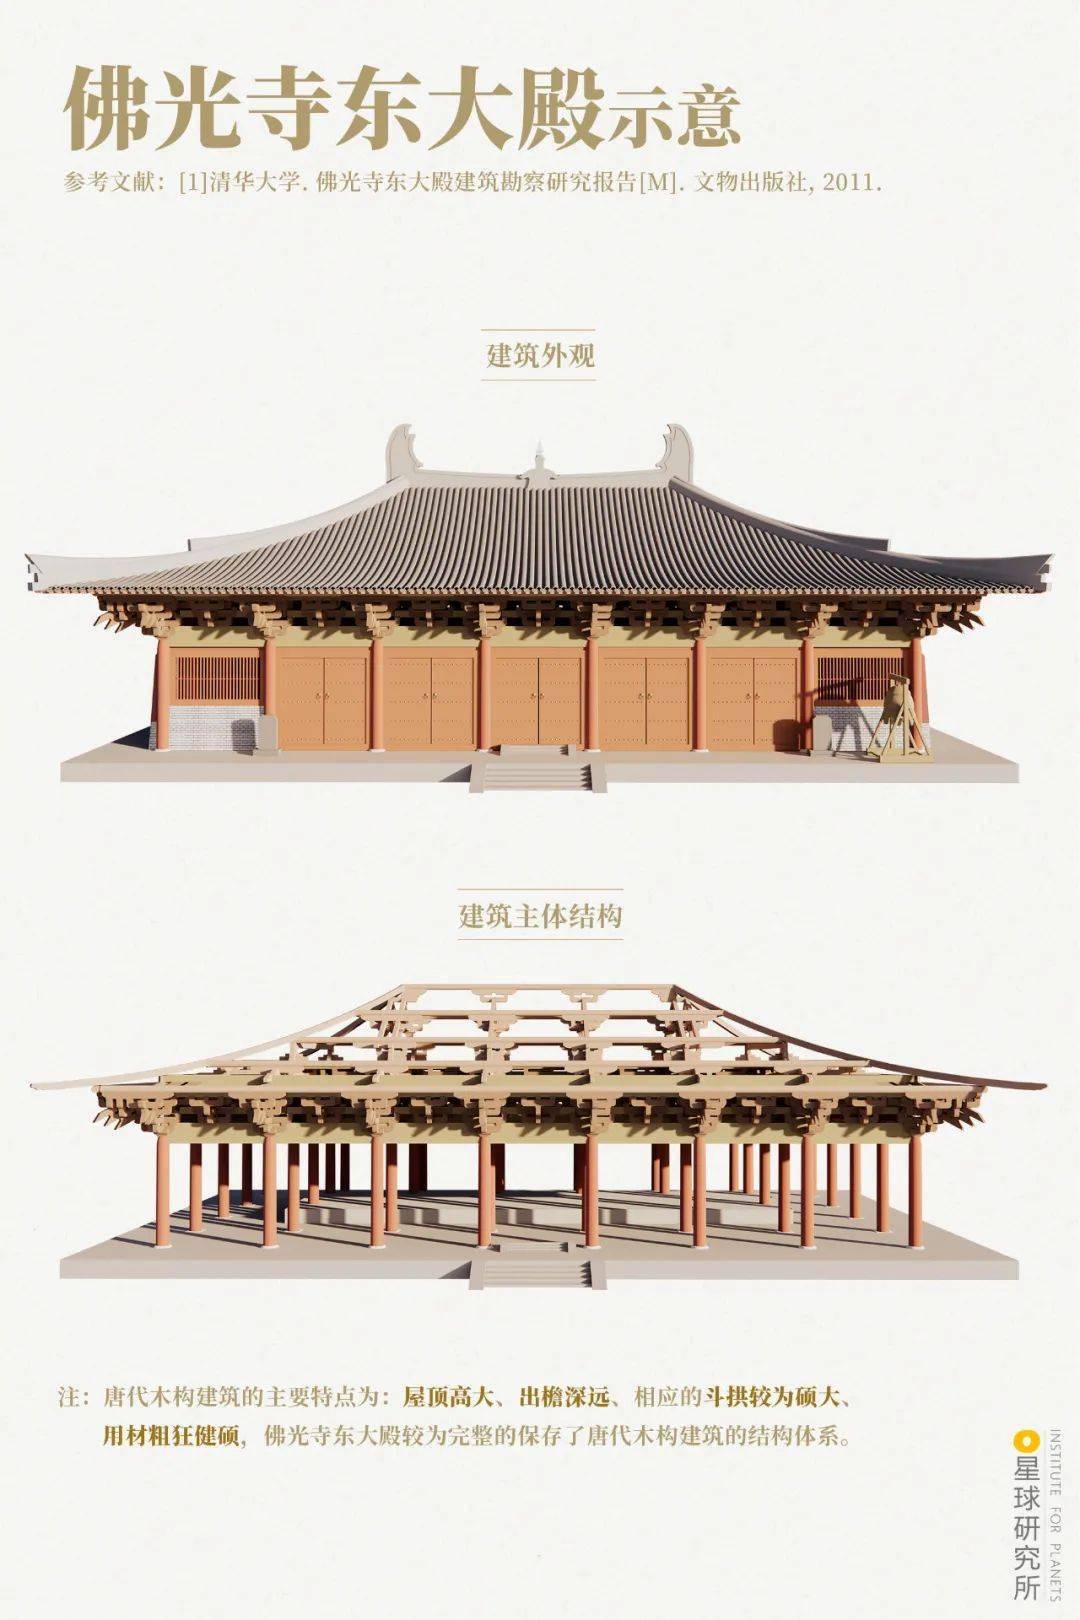 "中国木构建筑的活标本" ▽ 佛光寺建筑全景,东大殿为最上方两颗古松